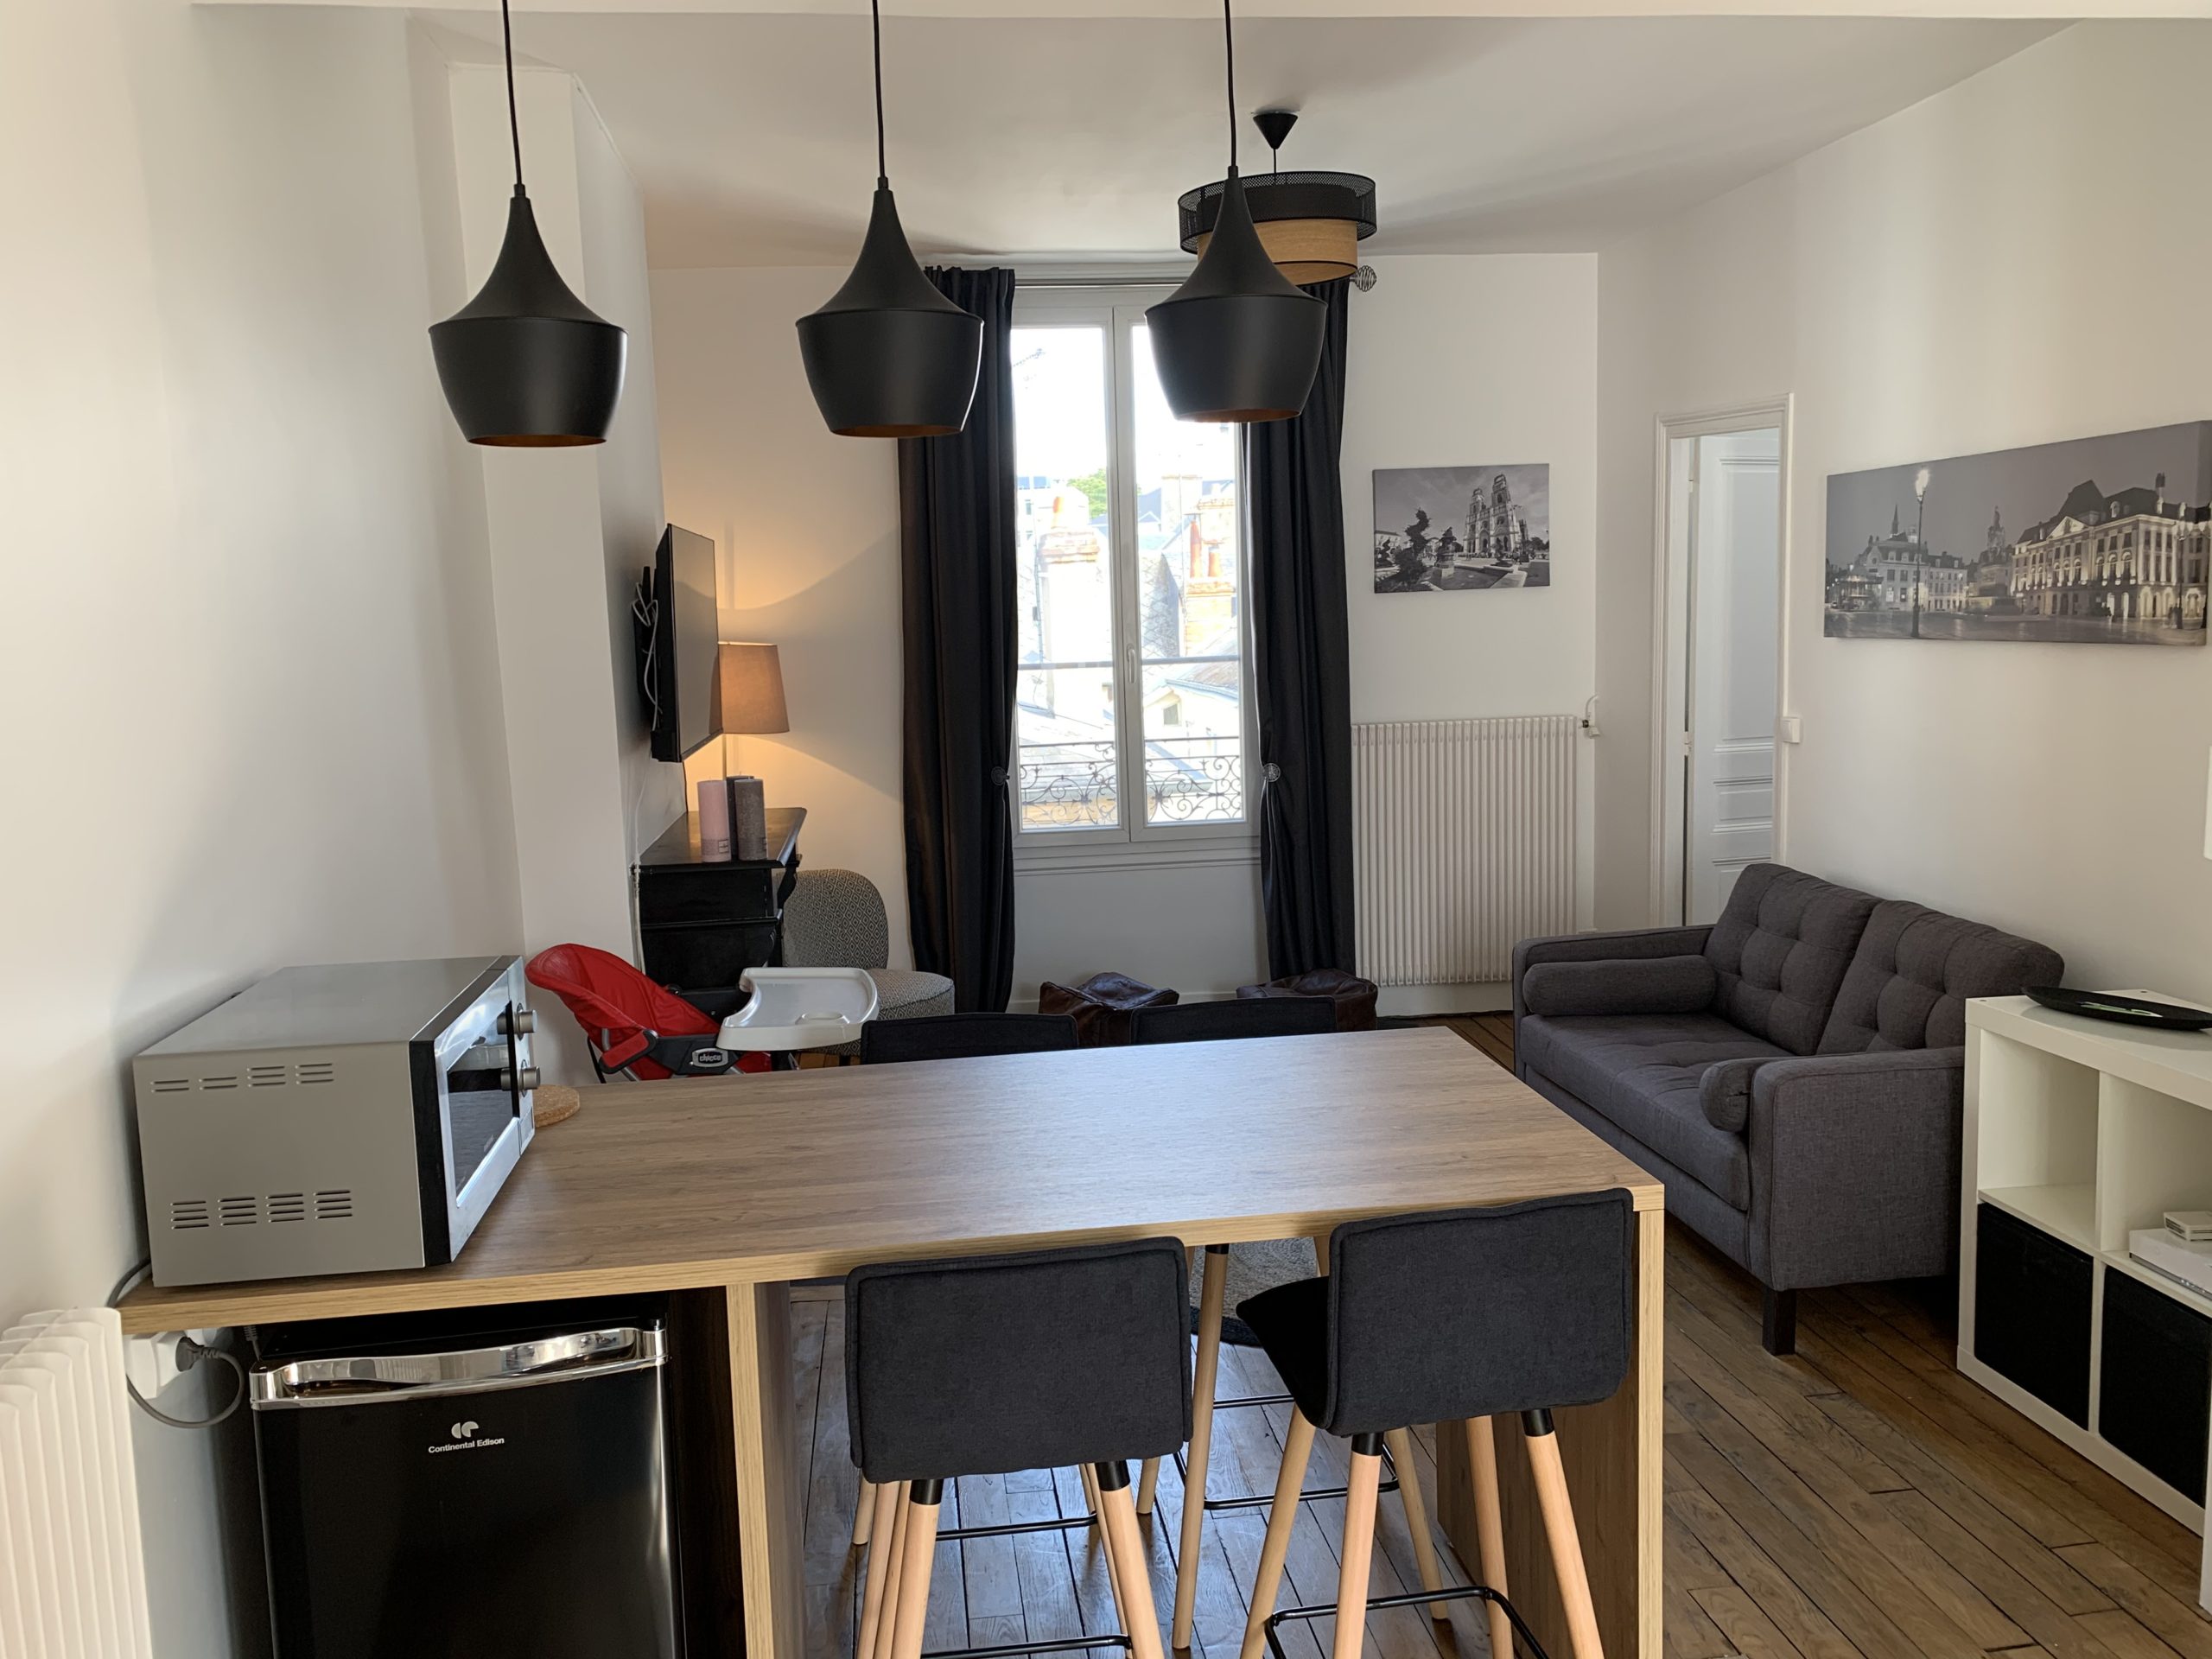 good loc orléans conciergerie airbnb goodloc orléans gestion appartement maison location saisonnière